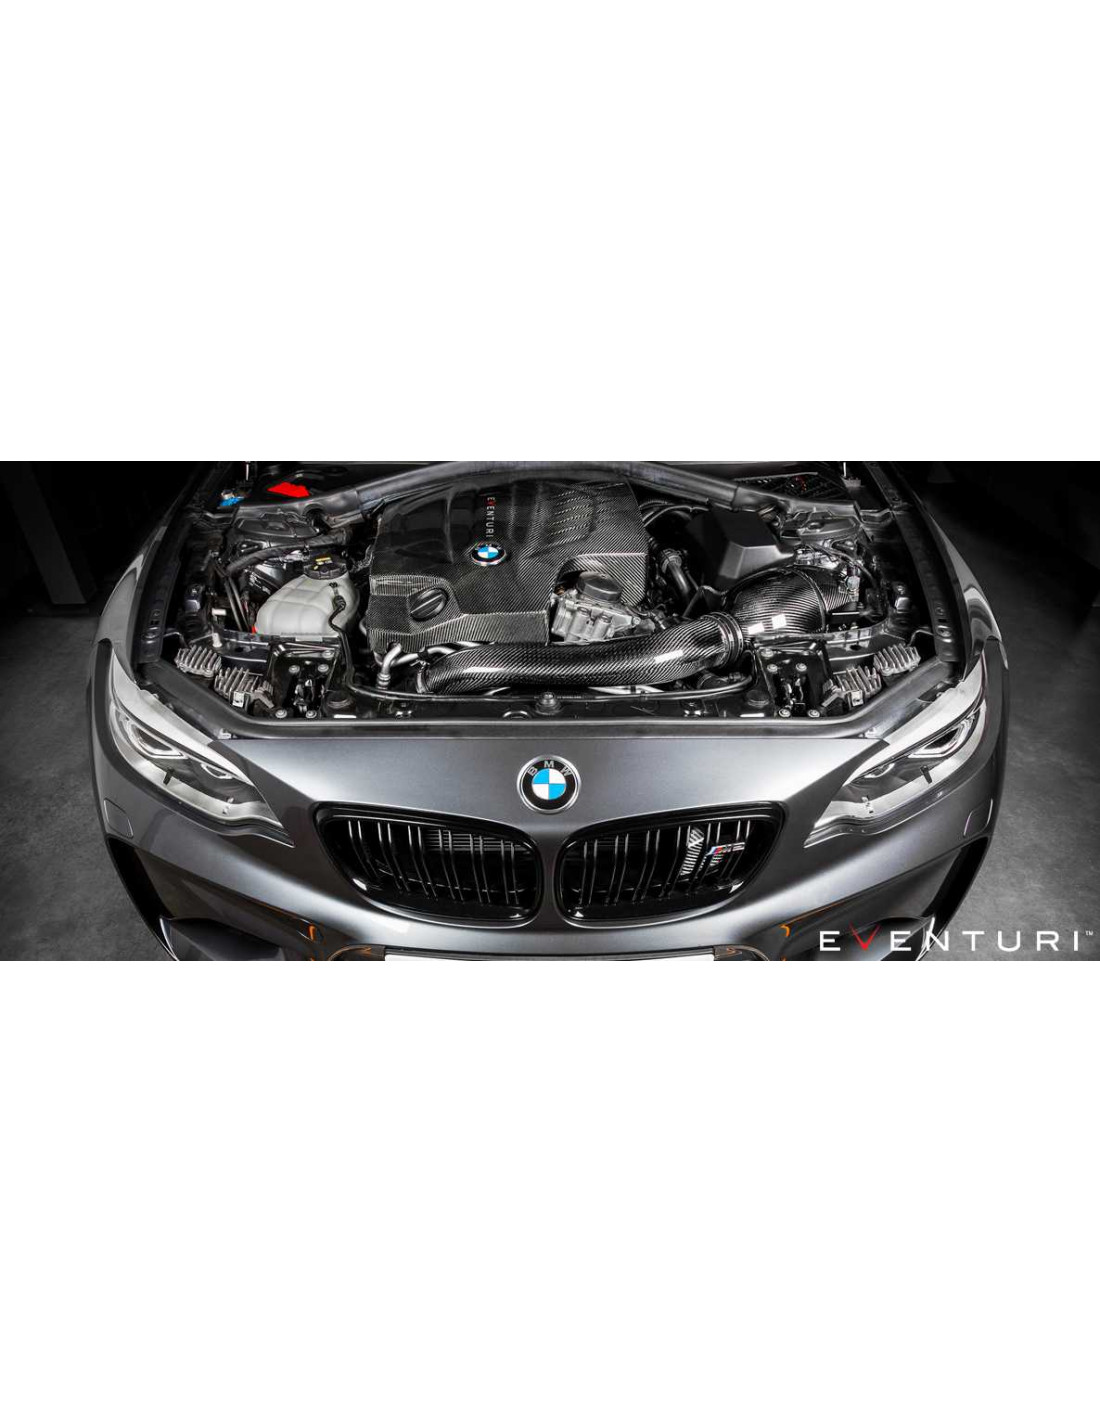 CT CARBONE  DIFFUSEUR NOIR BRILLANT BMW F20/F21 SÉRIE 1 LCI – CT Carbon